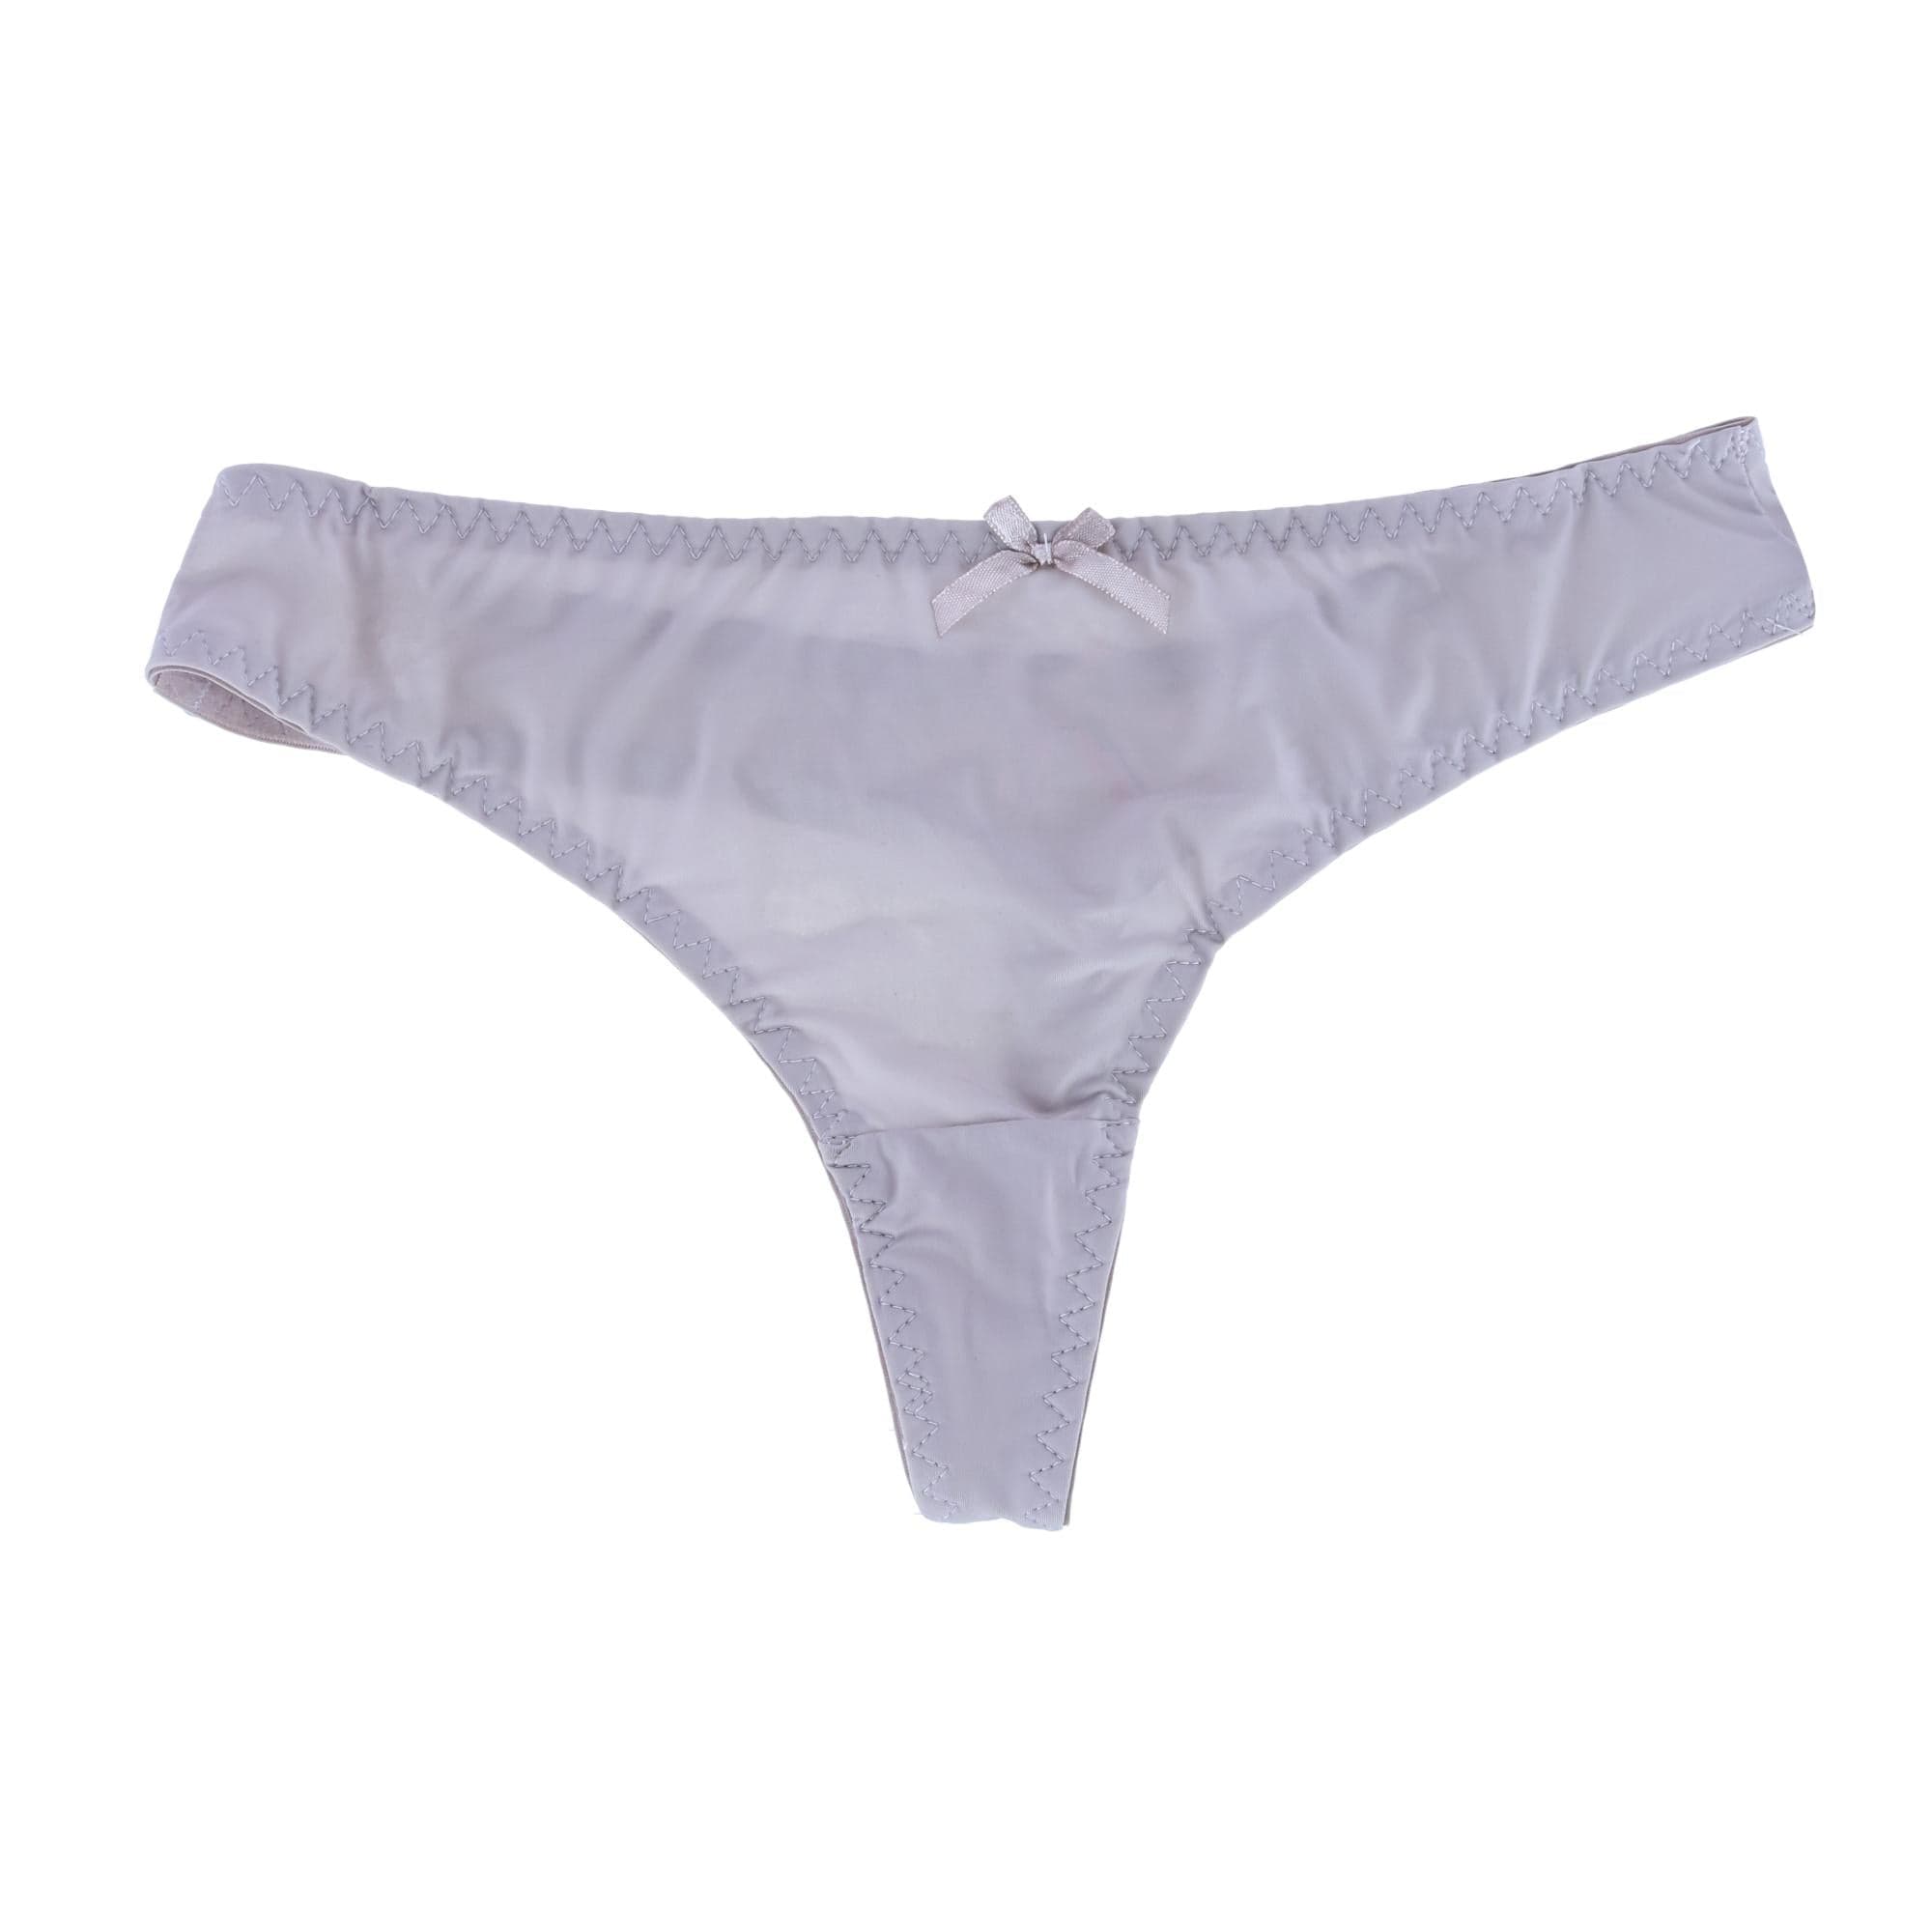 Women's French Cut Underwear by CTM